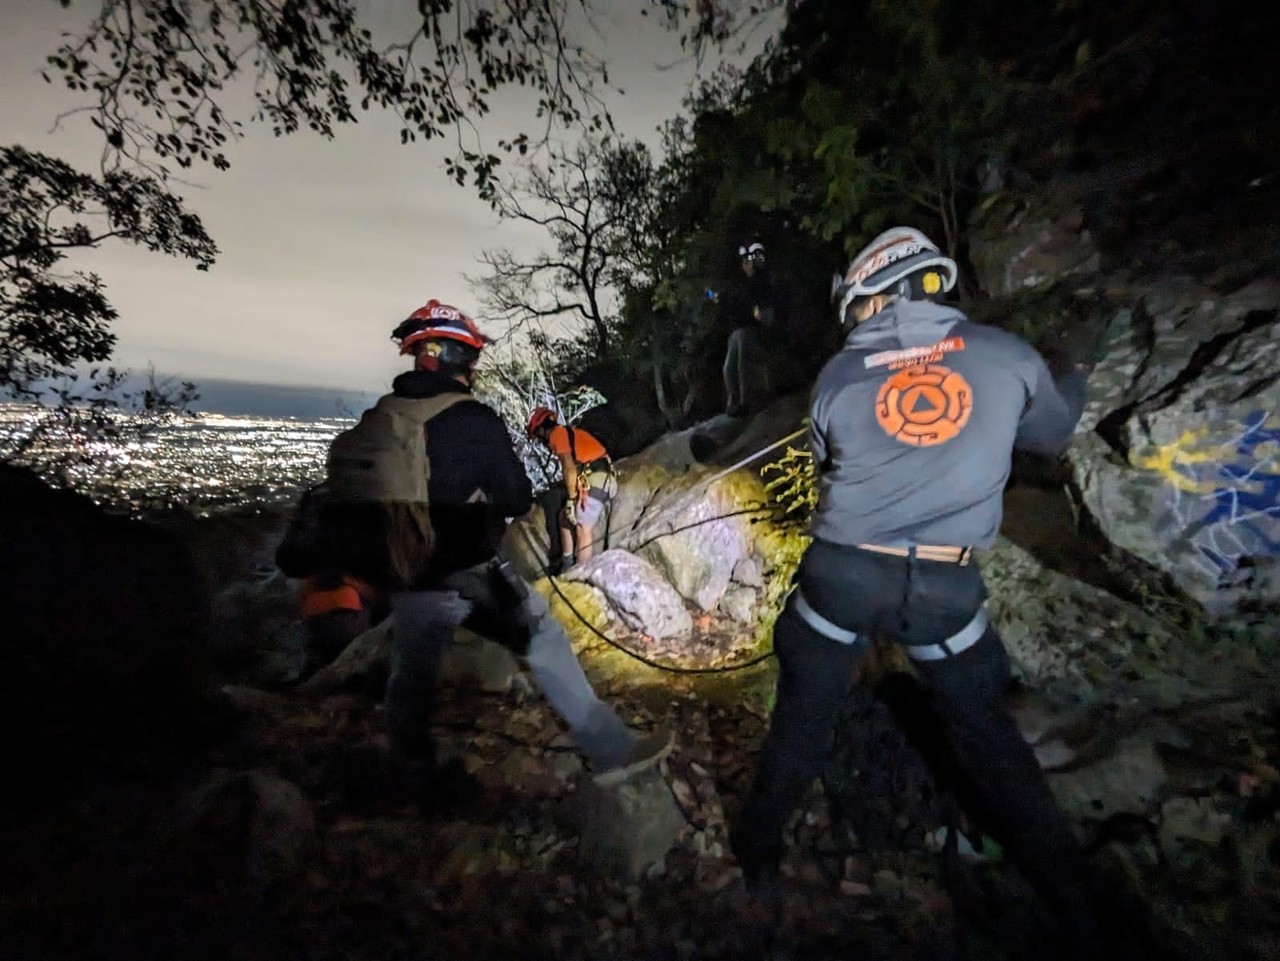 El incidente ocurrió mientras descendía de la zona de las cascadas, cuando el senderista sufrió una lesión en el tobillo. Foto: Protección Civil de Nuevo León.